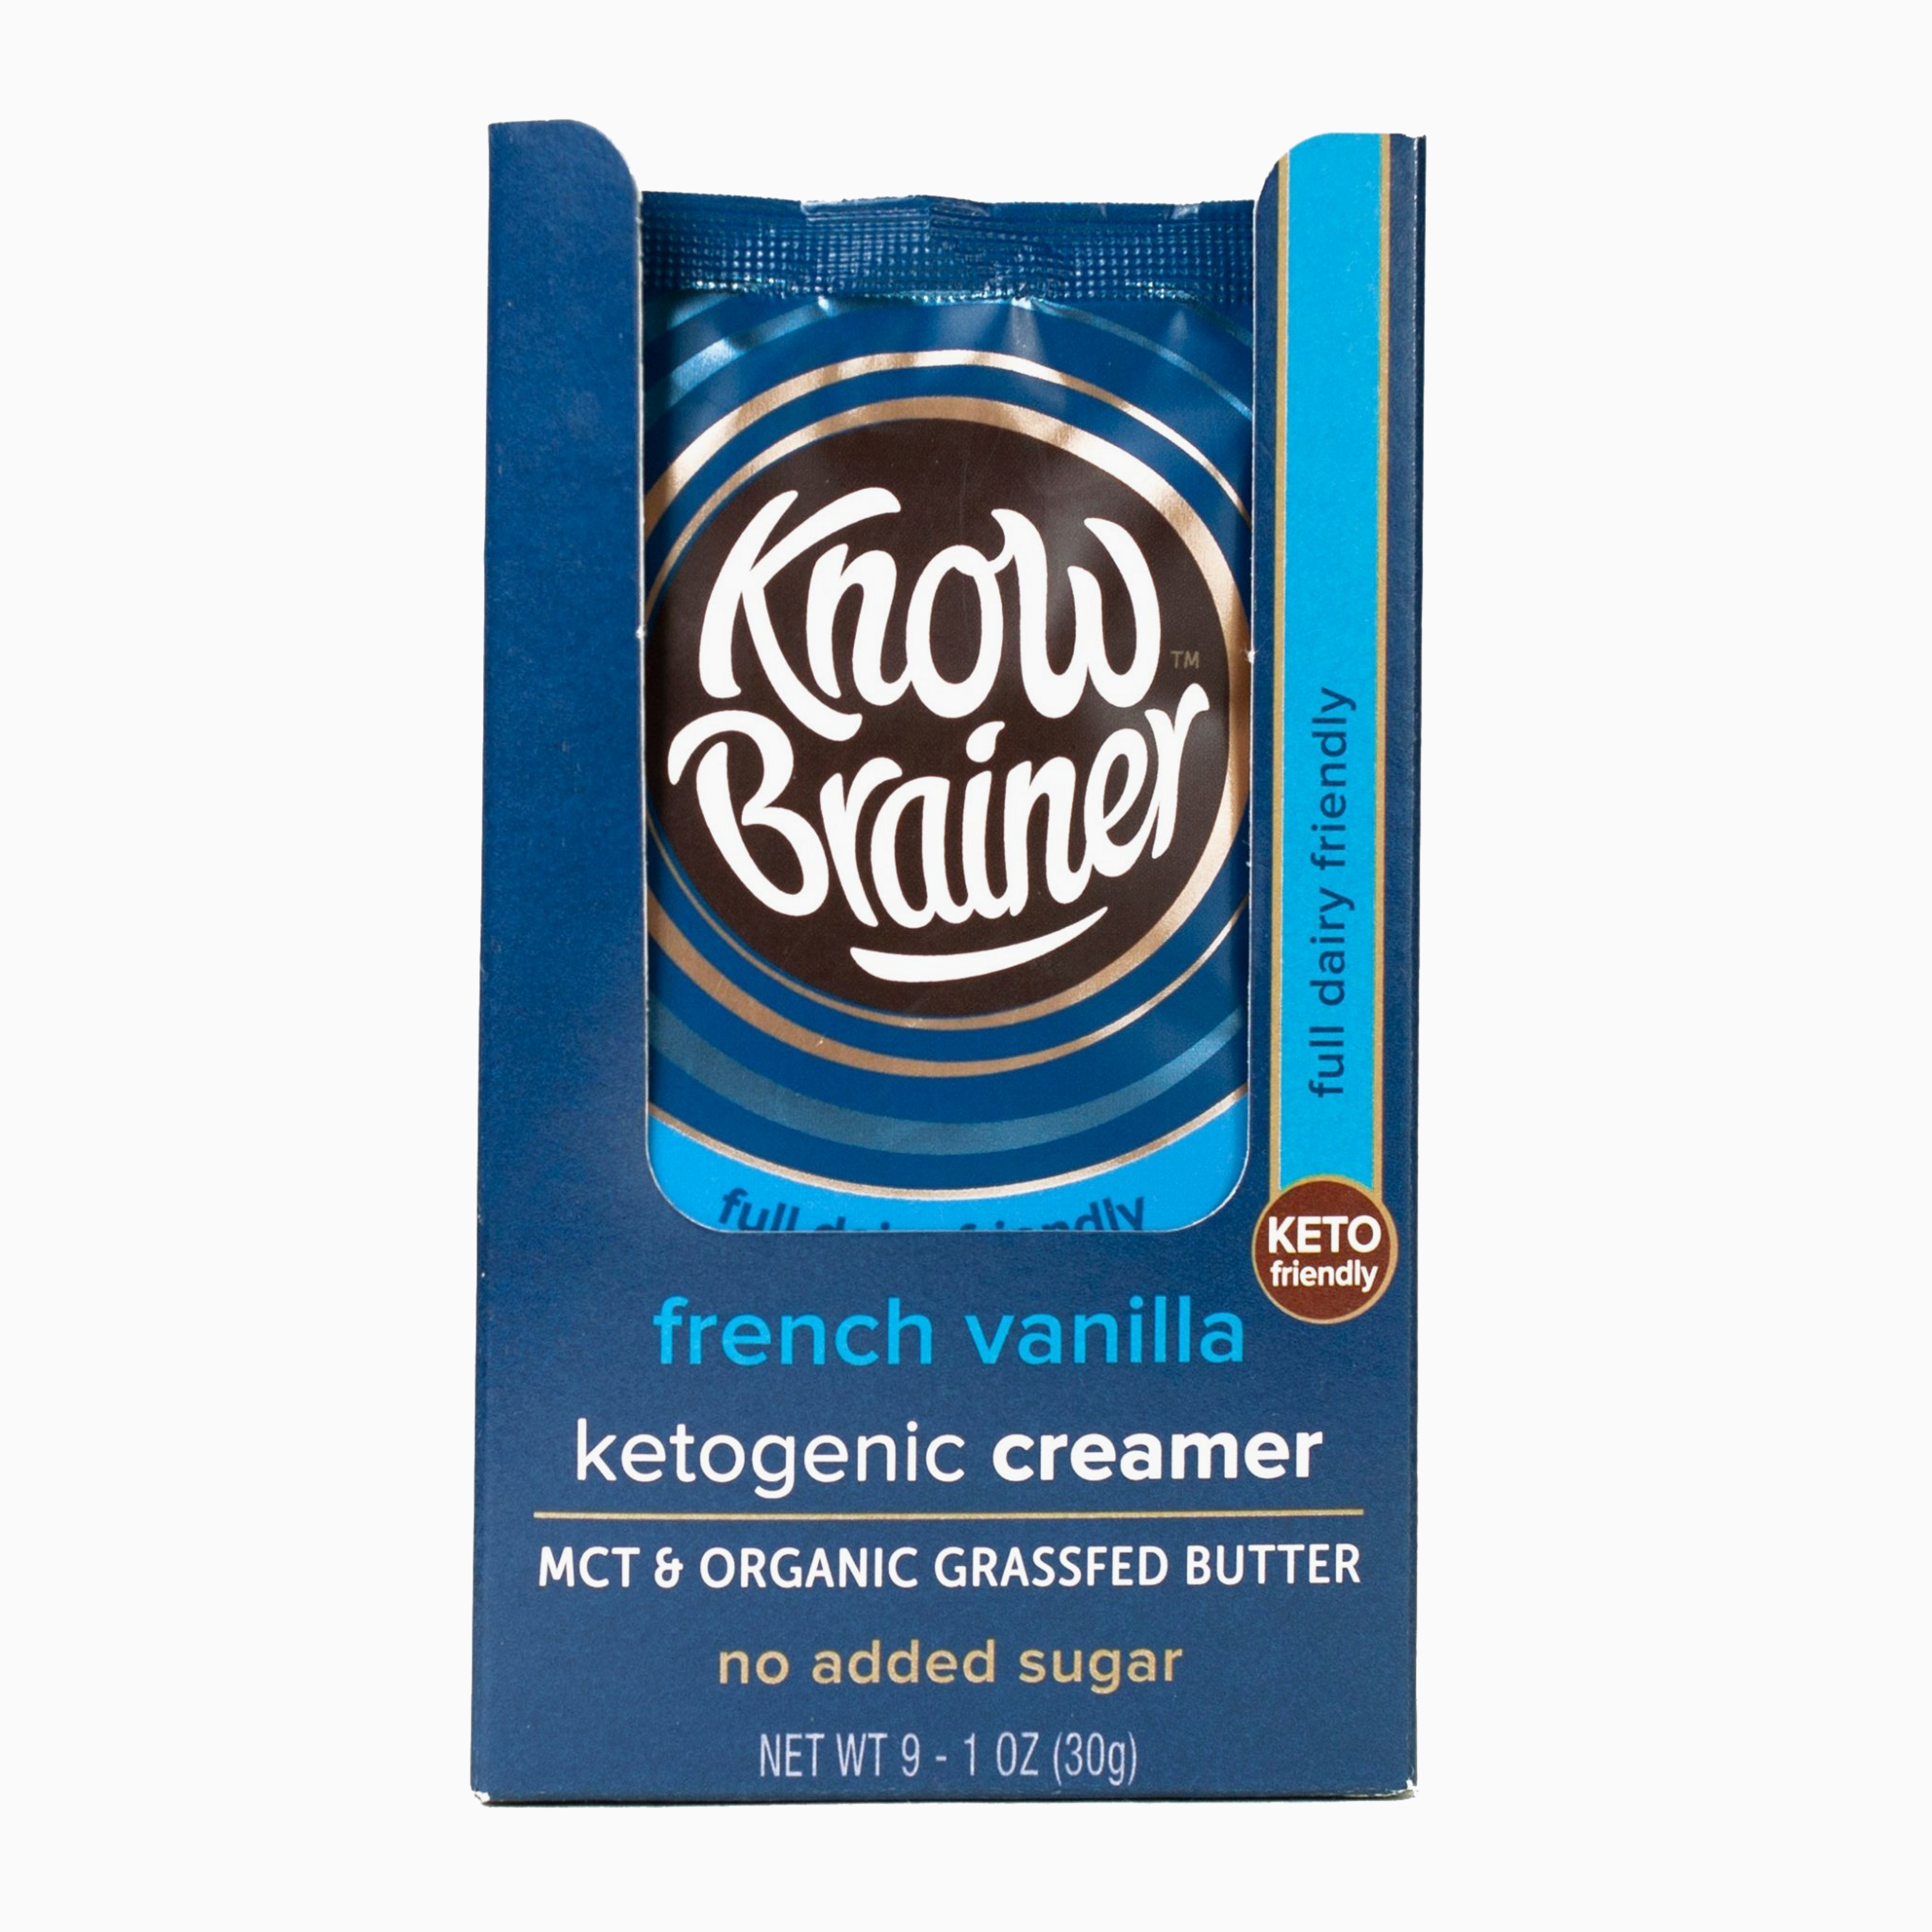 French Vanilla Keto Creamer